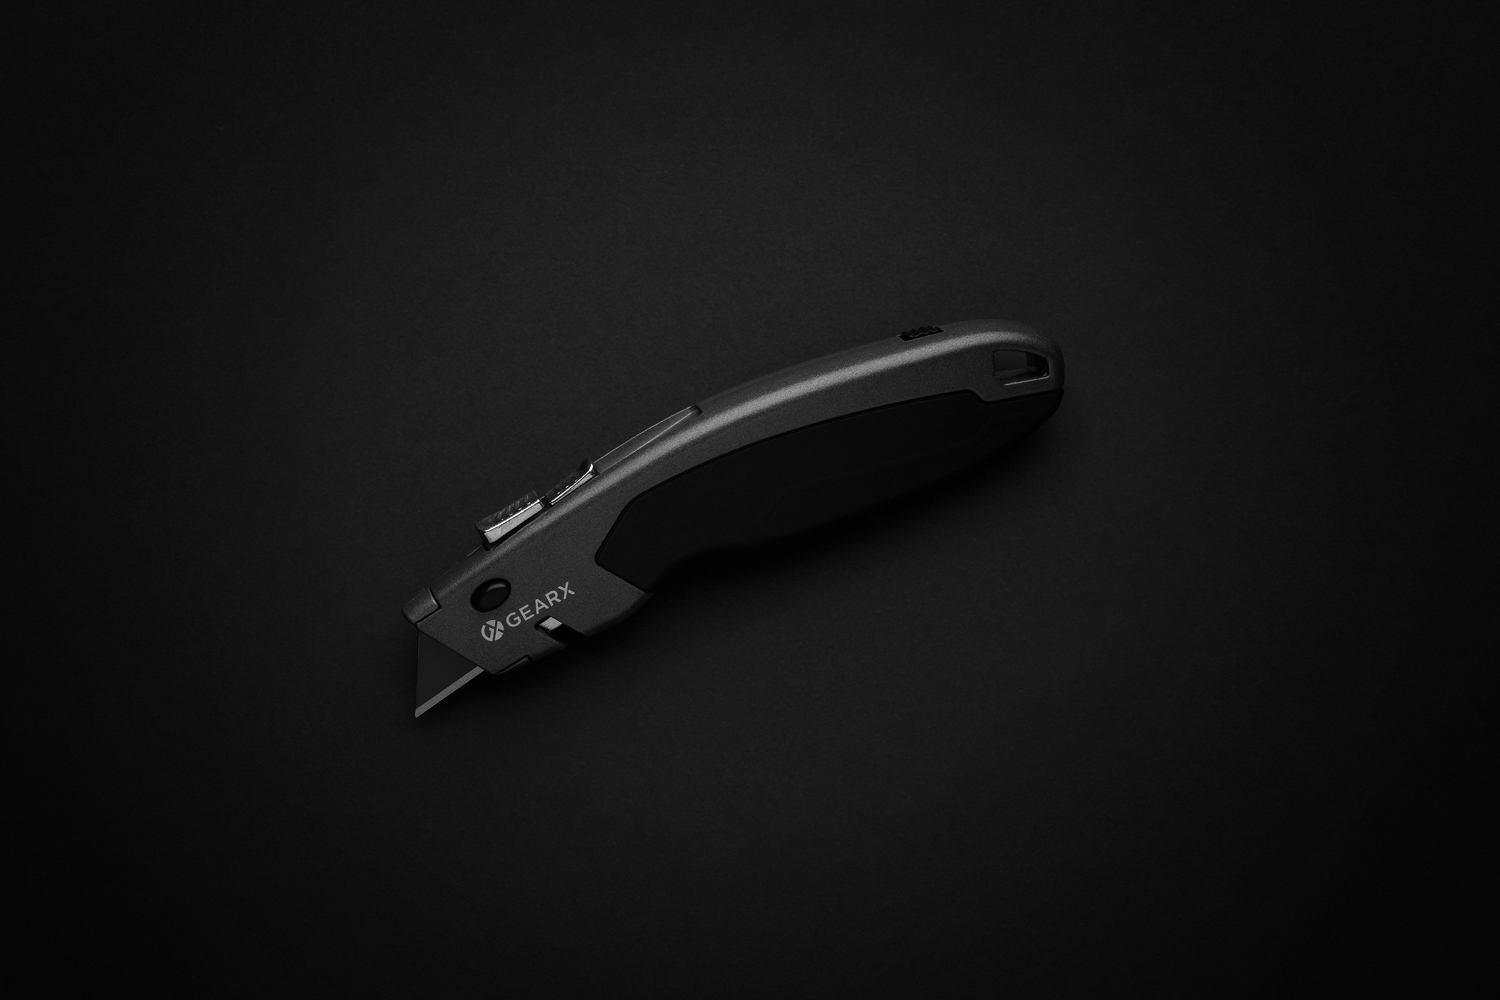 Сверхпрочный строительный нож Gear X - 046P215.131